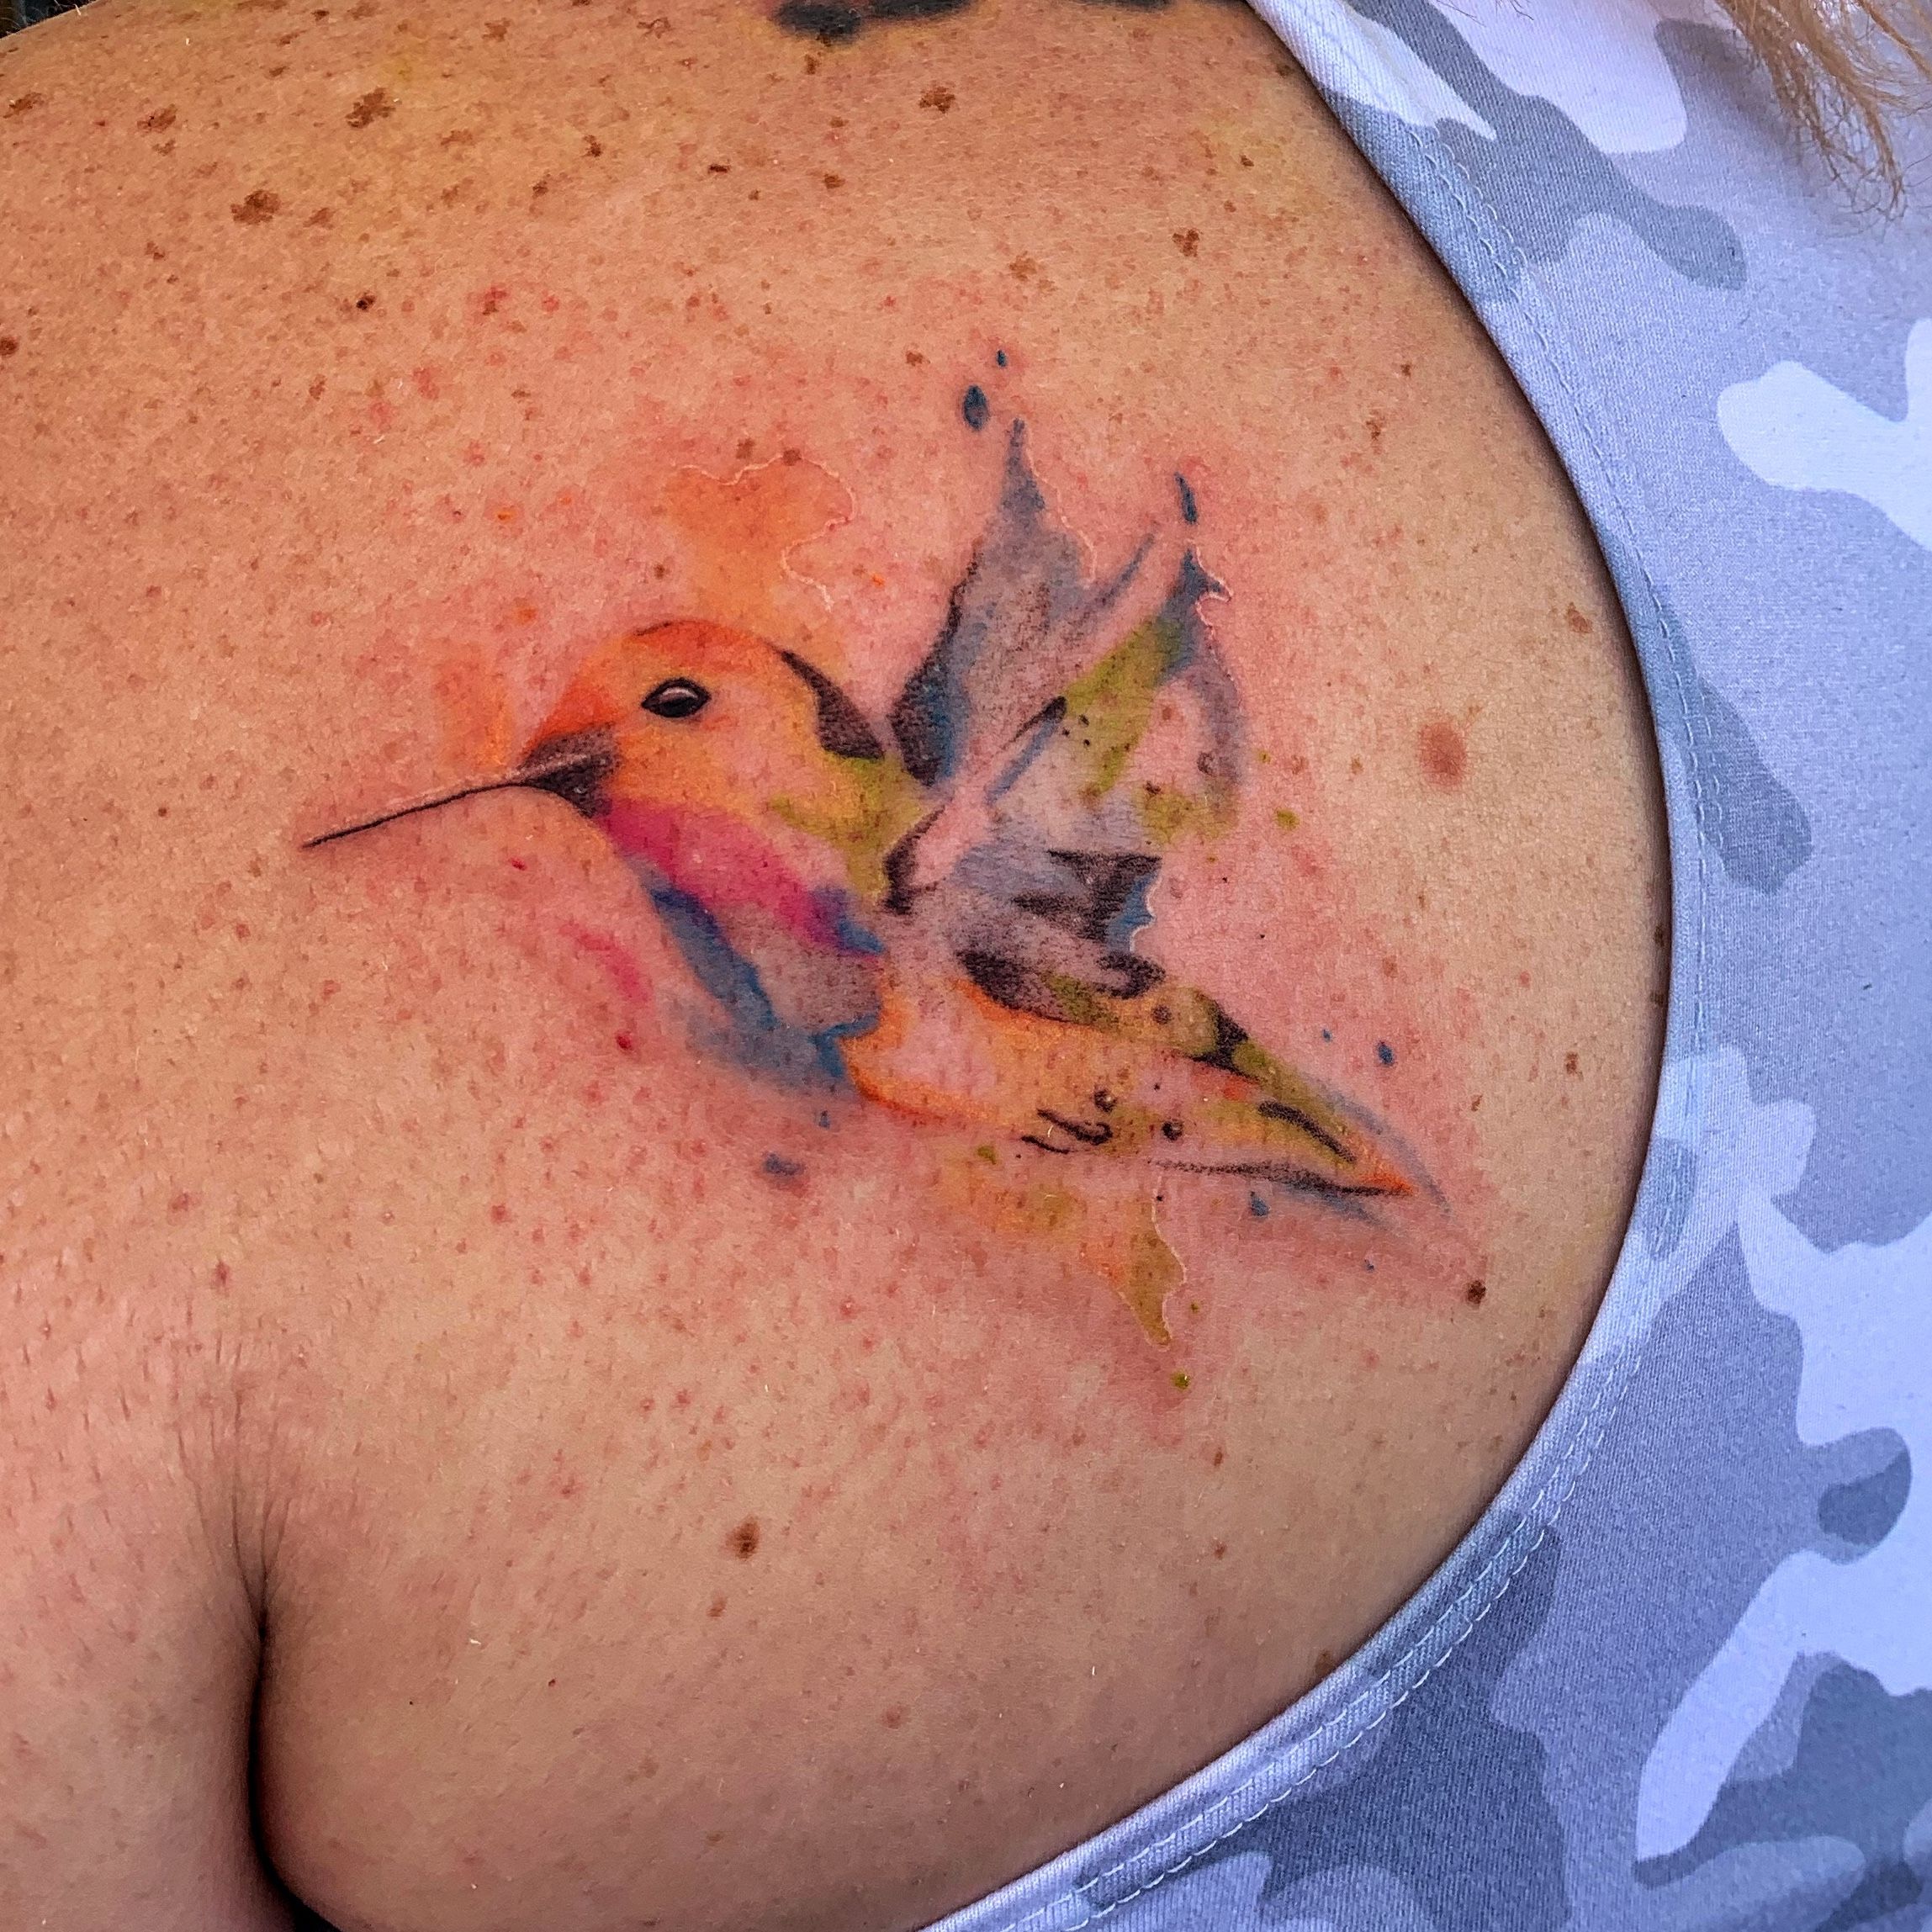 Hummingbird Temporary Tattoo — Jennifer Lommers